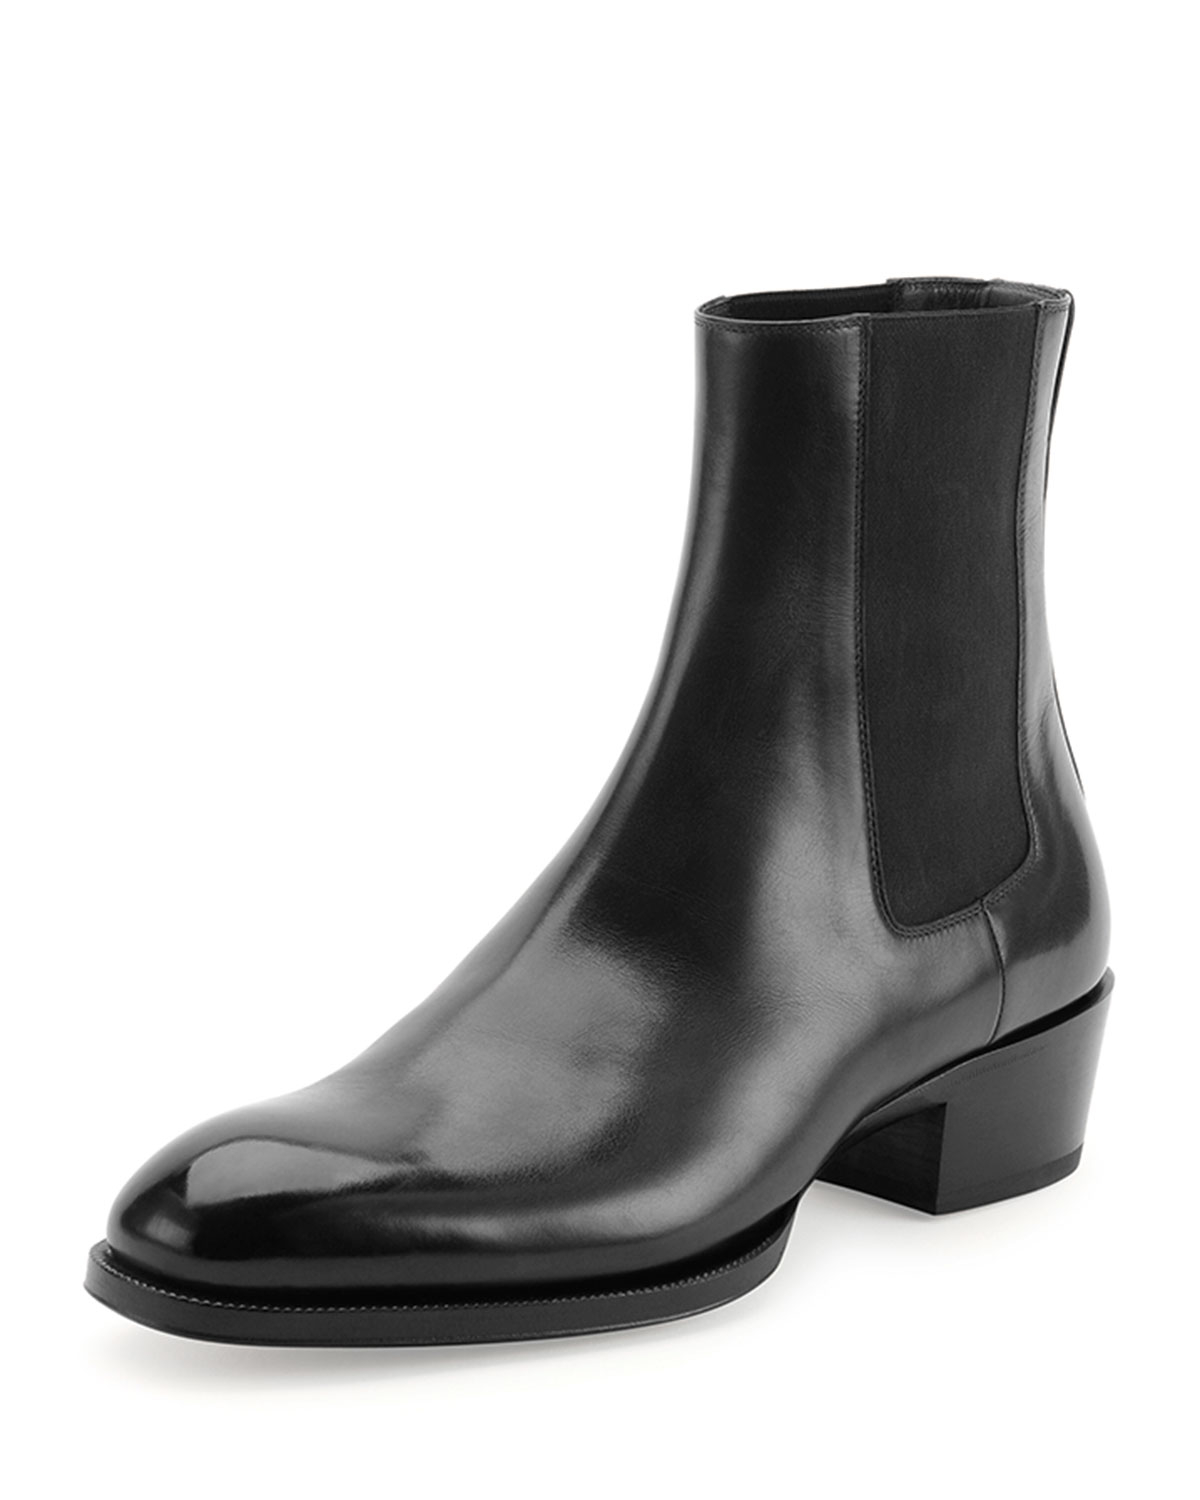 Tom Ford Chelsea Boot in Black for Men - Lyst